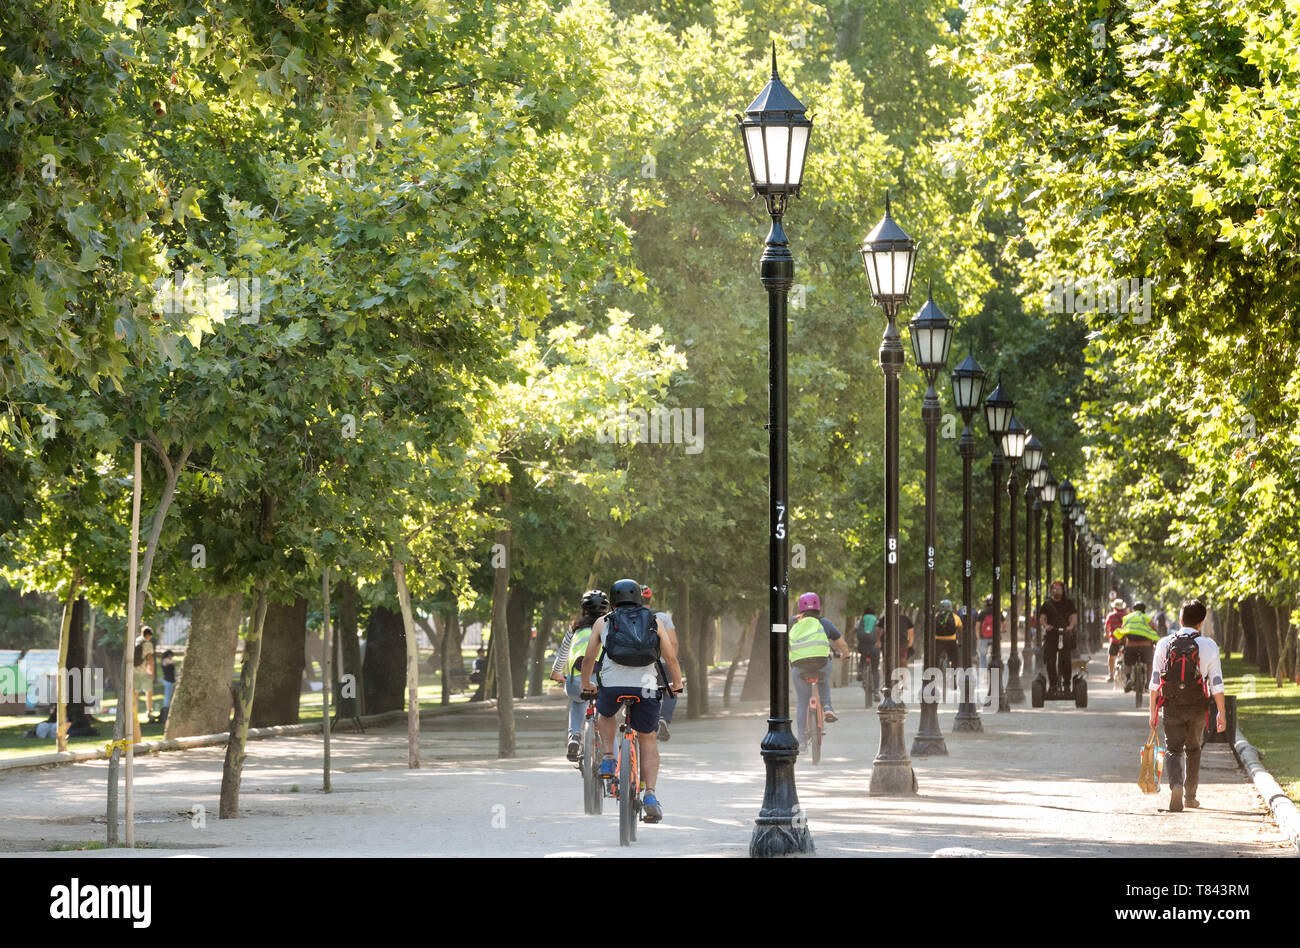 Region Metropolitana, Santiago, Chile - Menschen Reiten Fahrrad in die forstliche Park, die mehr traditionellen städtischen Park in der Stadt. Stockfoto